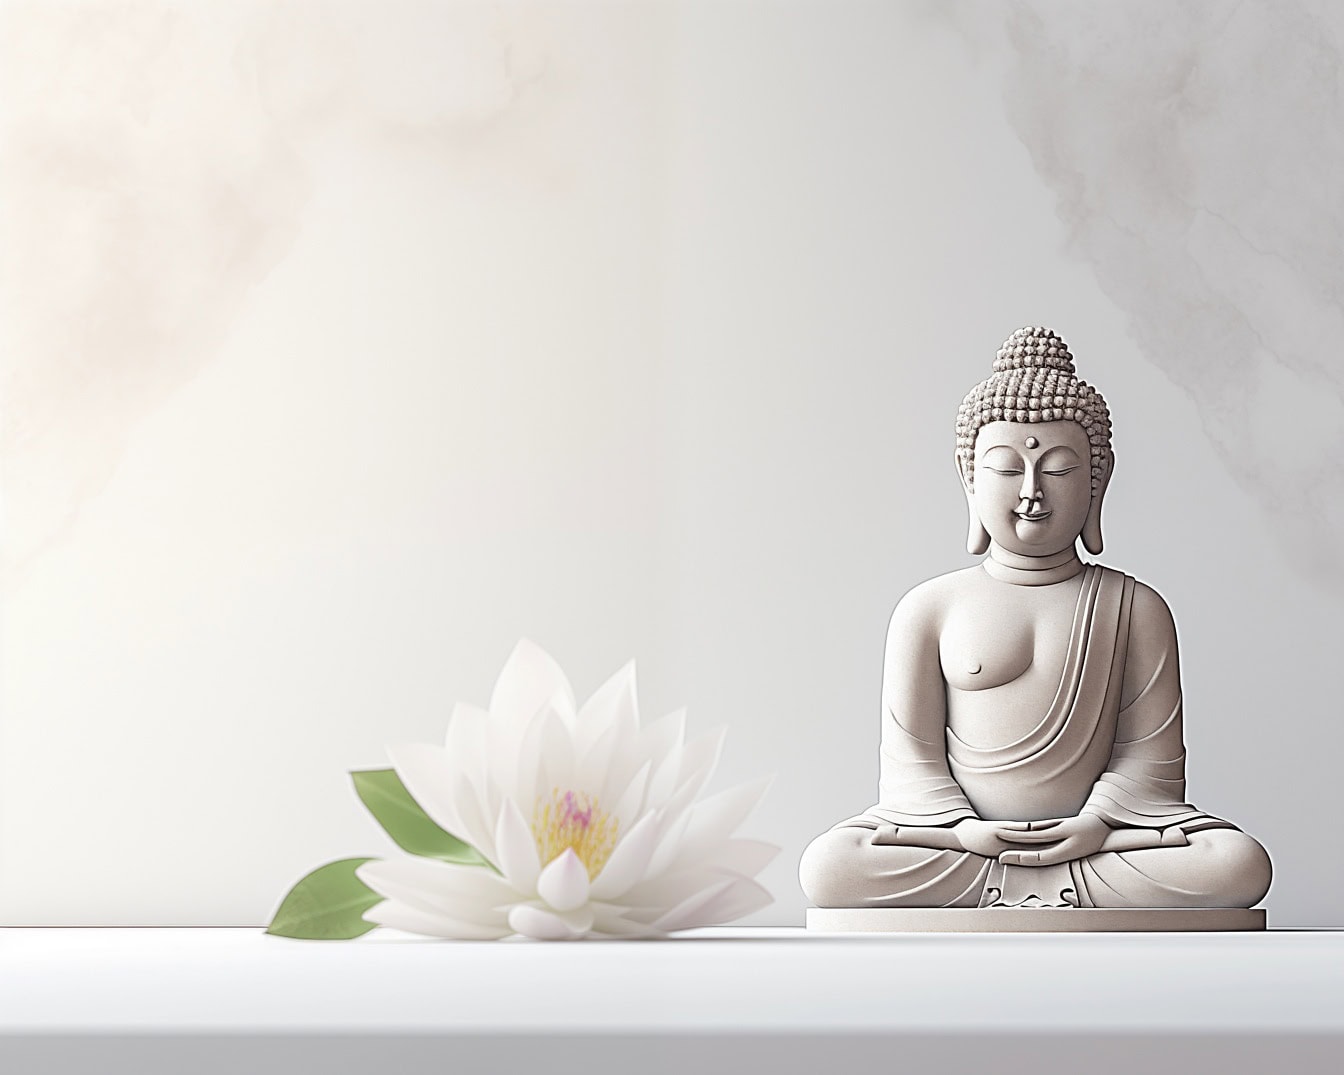 Egy fehér lótuszvirág mellett meditáló buddha szobra